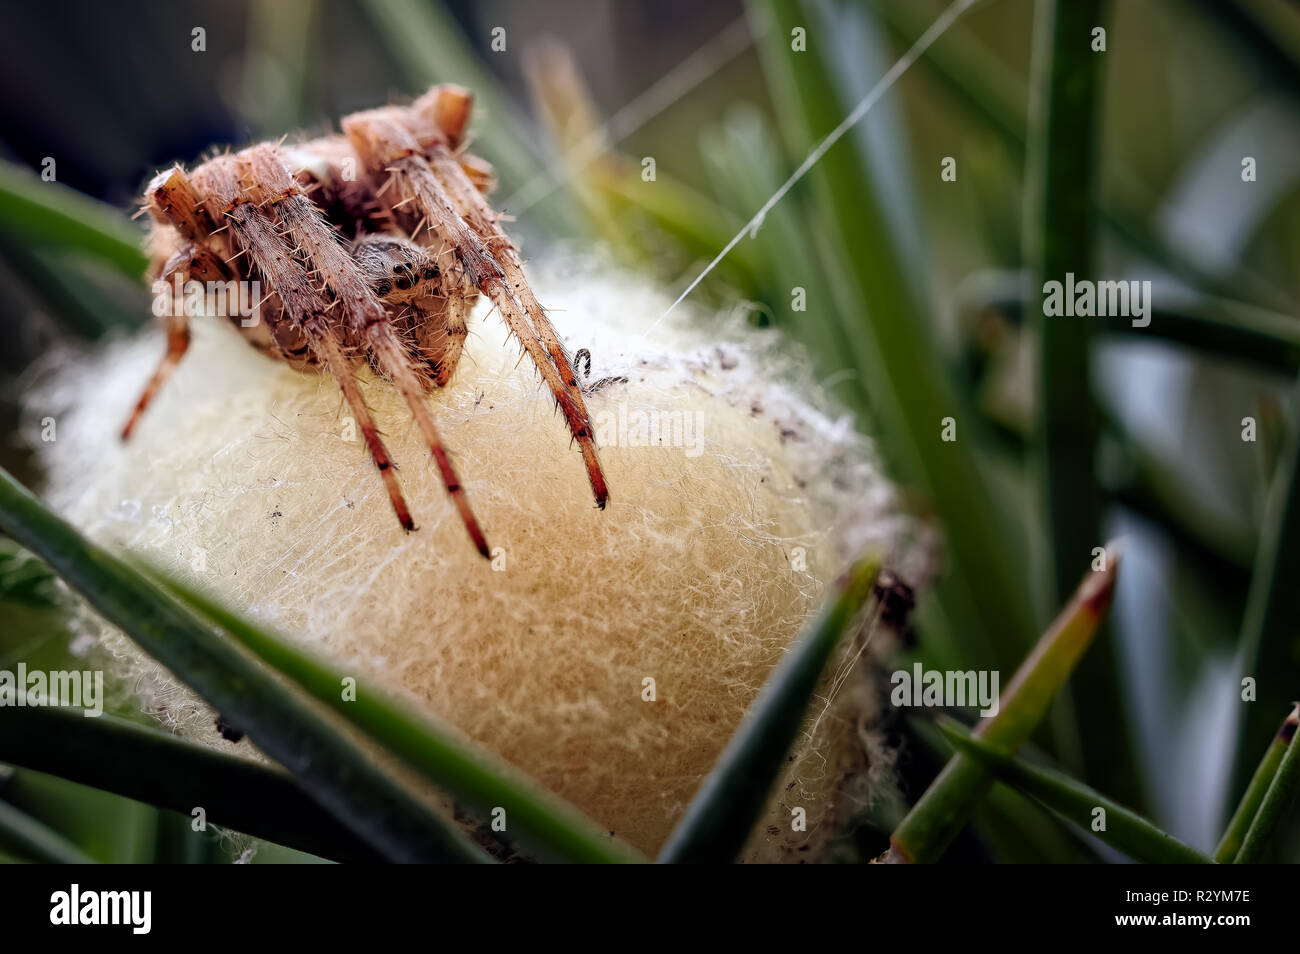 Una fotografia che mostra un giardino comune spider (Araneus diadematus) guardia lei di recente le uova deposte. Foto Stock